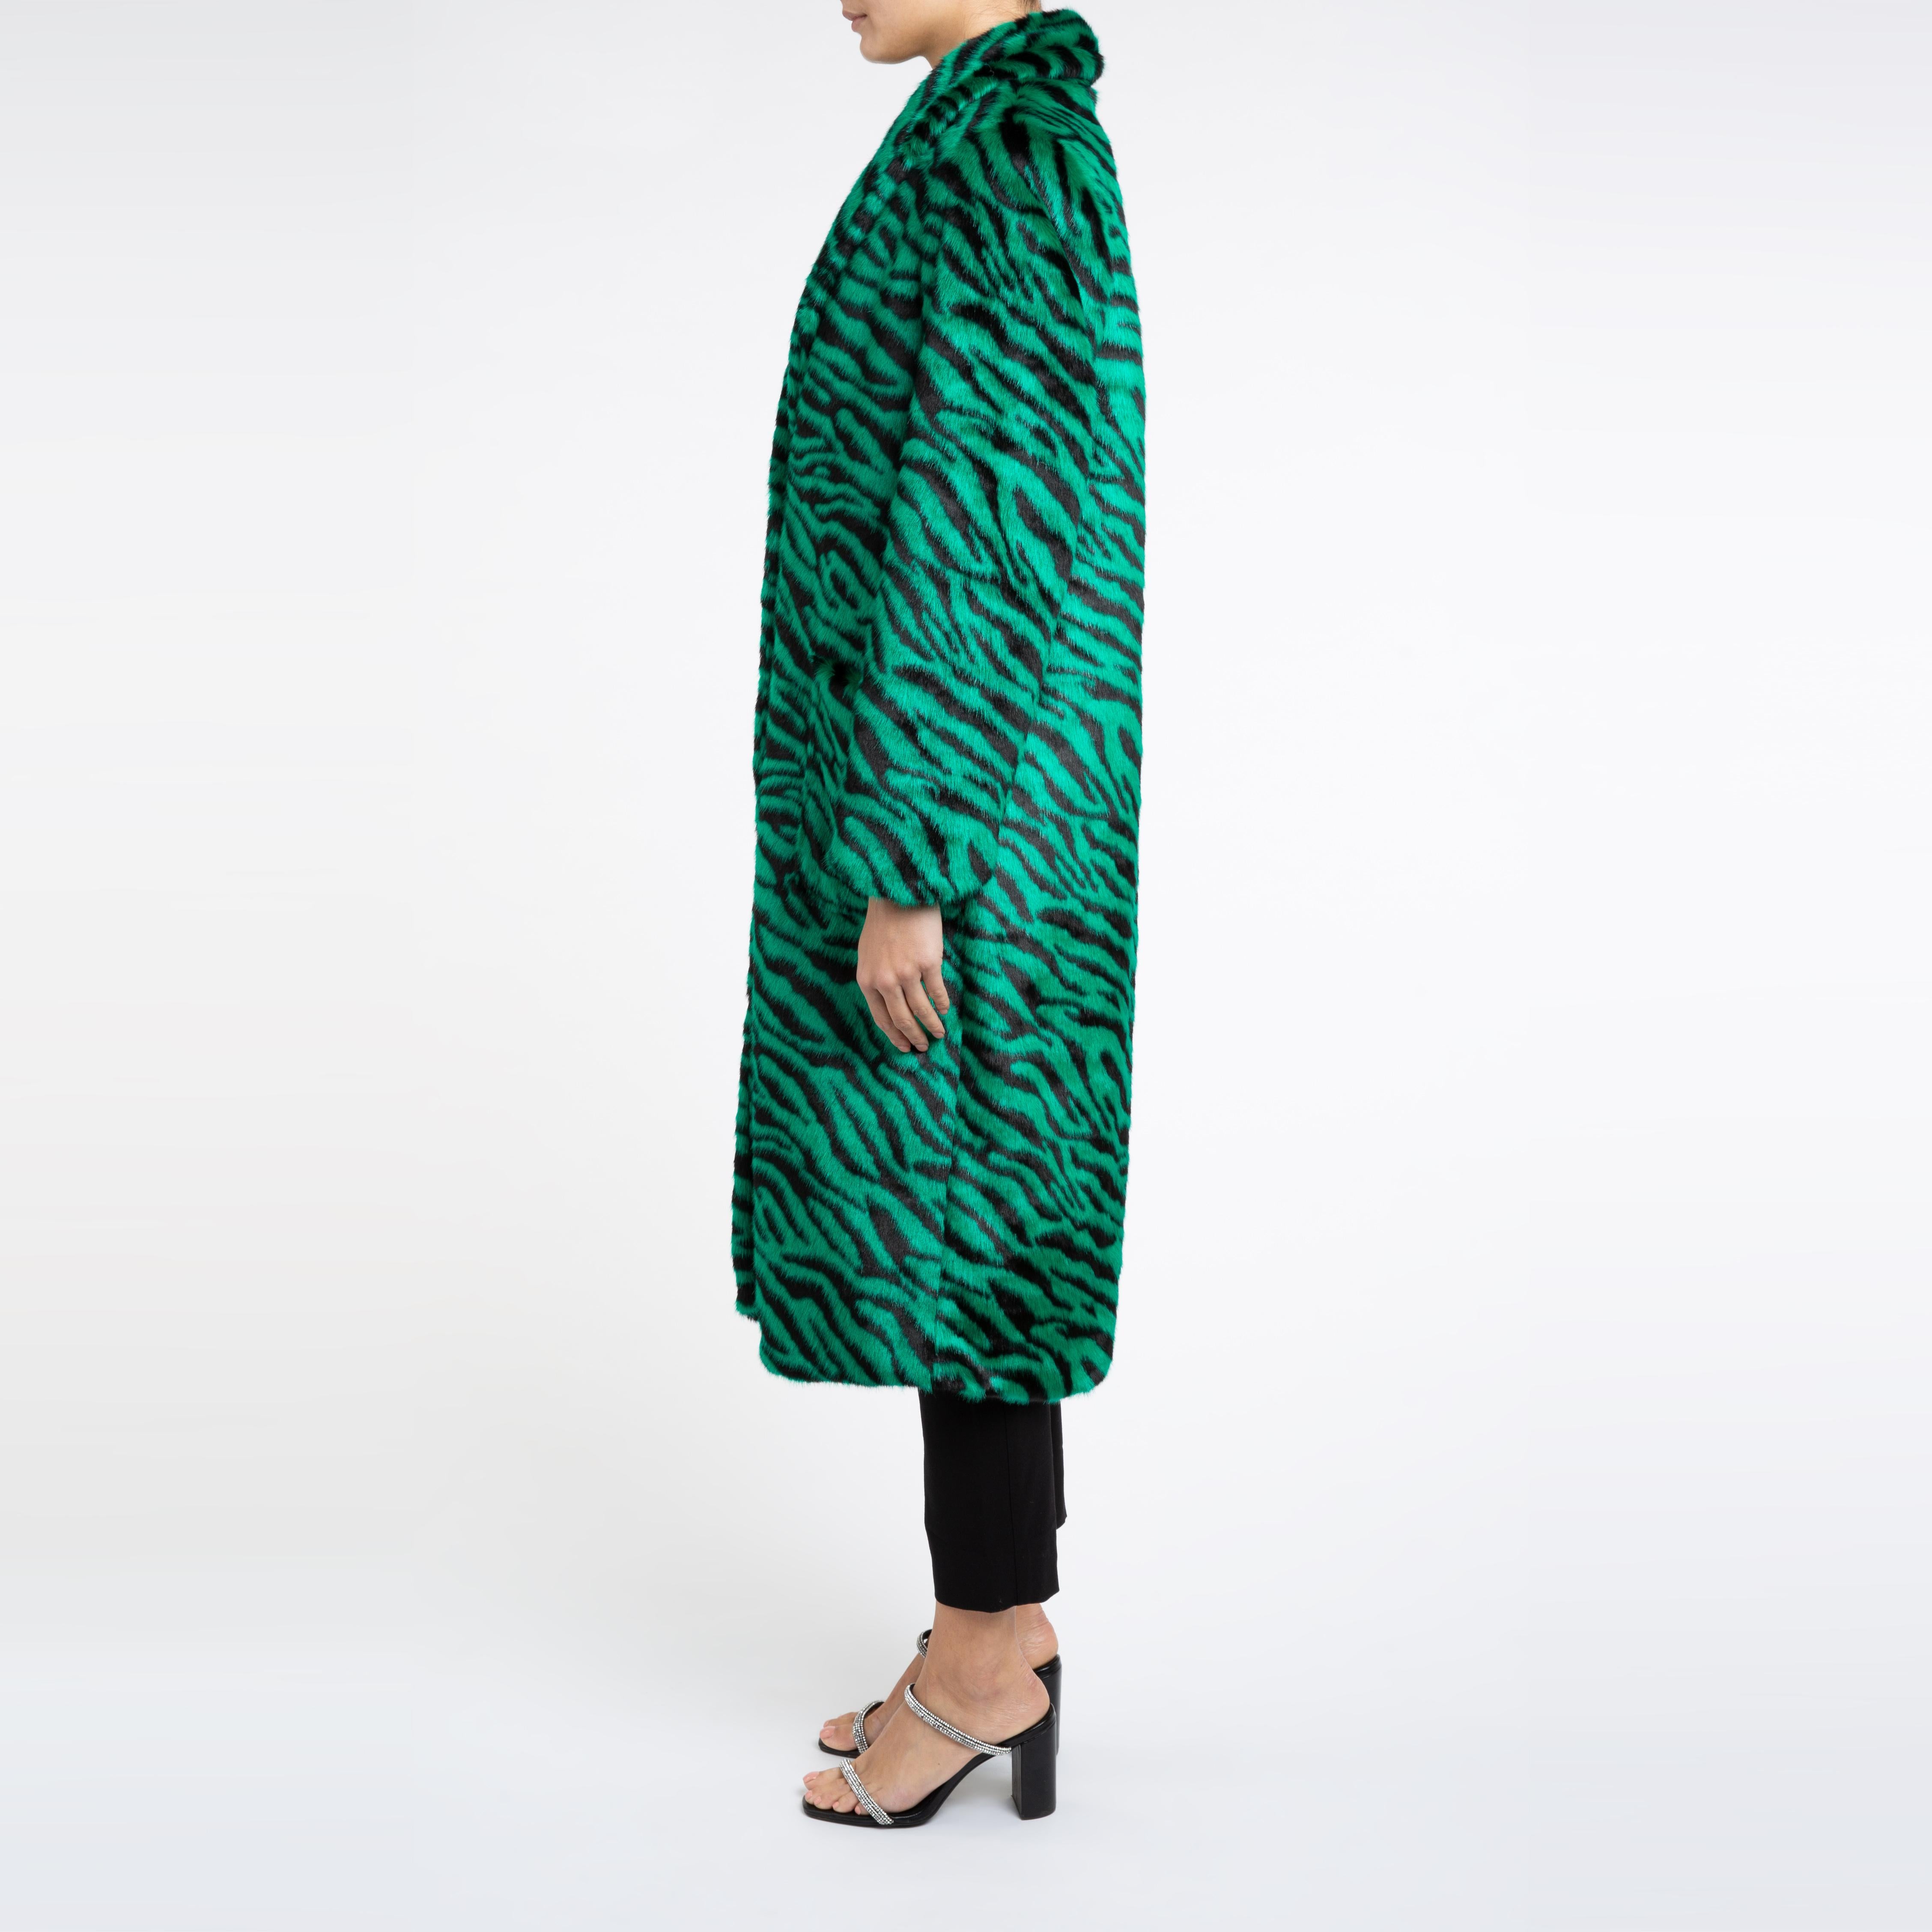 Esmeralda Kunstfell Mantel in Smaragdgrün Zebra Print Größe uk 14

Ein Mantel, den man sowohl zu Jeans als auch zu einem Kleid tragen kann und der Sie in der kalten Jahreszeit warm hält. 
Dieses Longline-Design ist schmeichelhaft und lässt sich mit